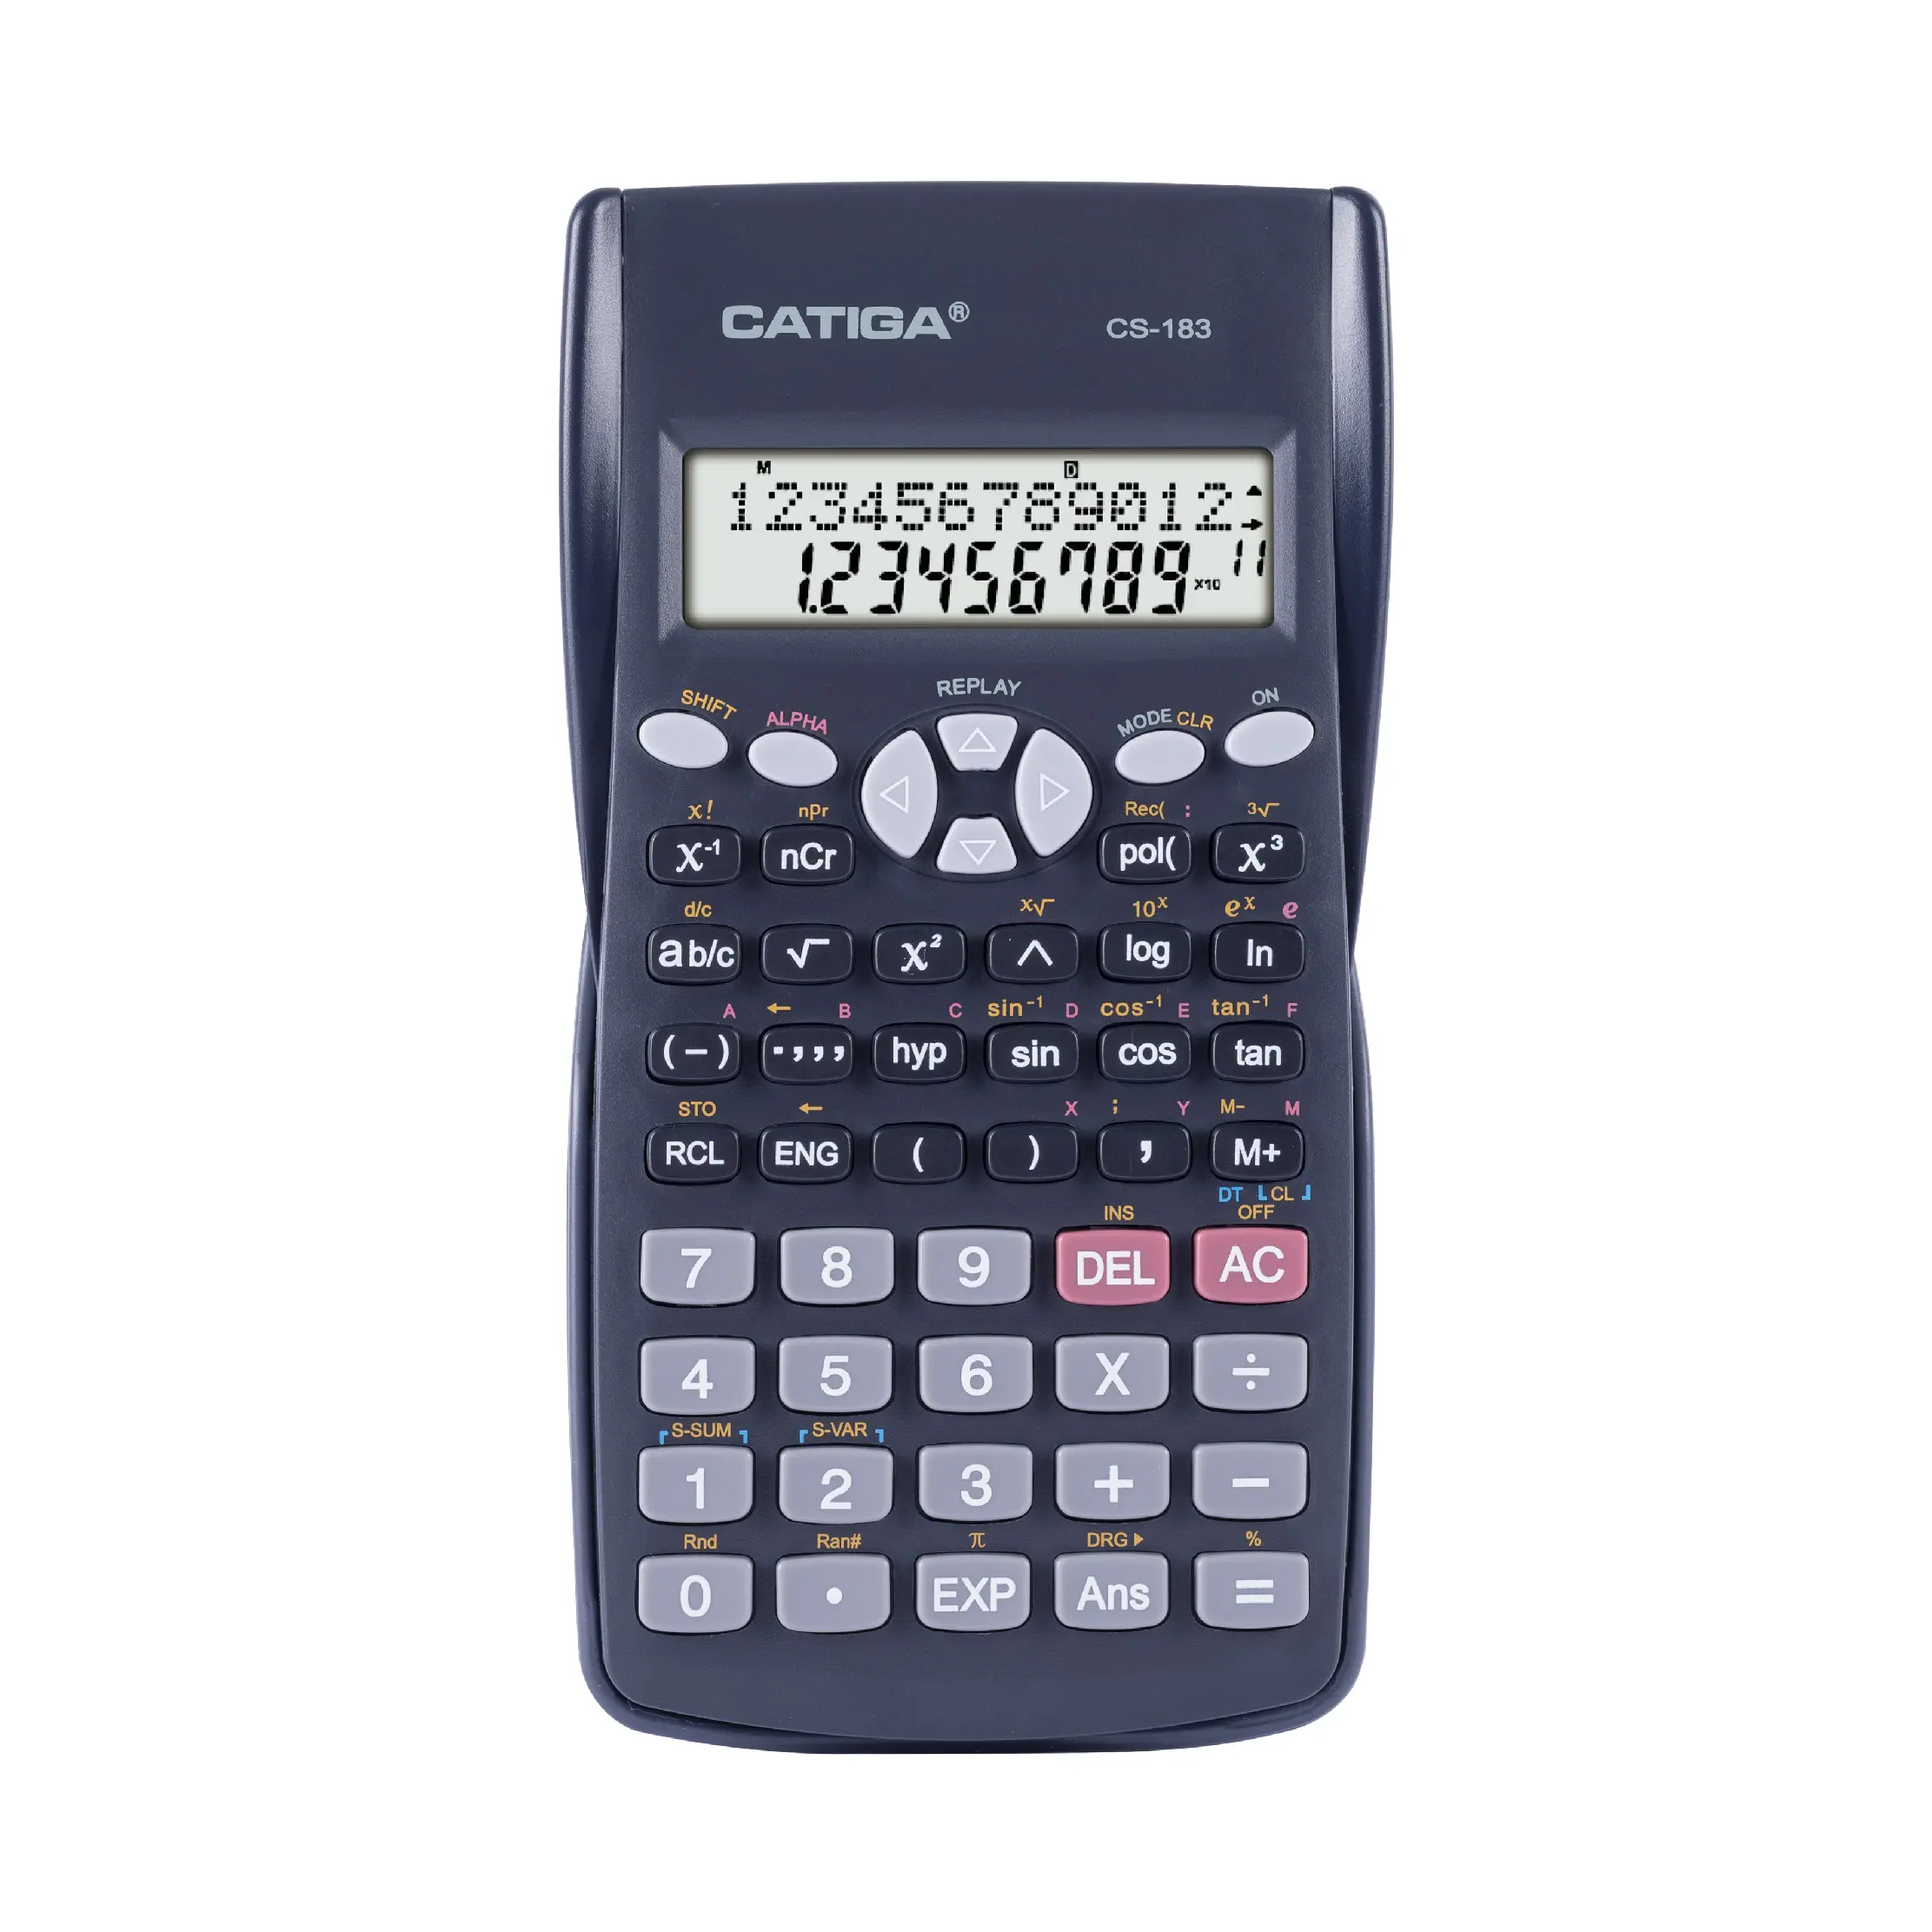 CS-183 vendita inventario articoli di cancelleria calcolatrice scientifica produttori all'ingrosso 10 + 2 cifre calcolatrice